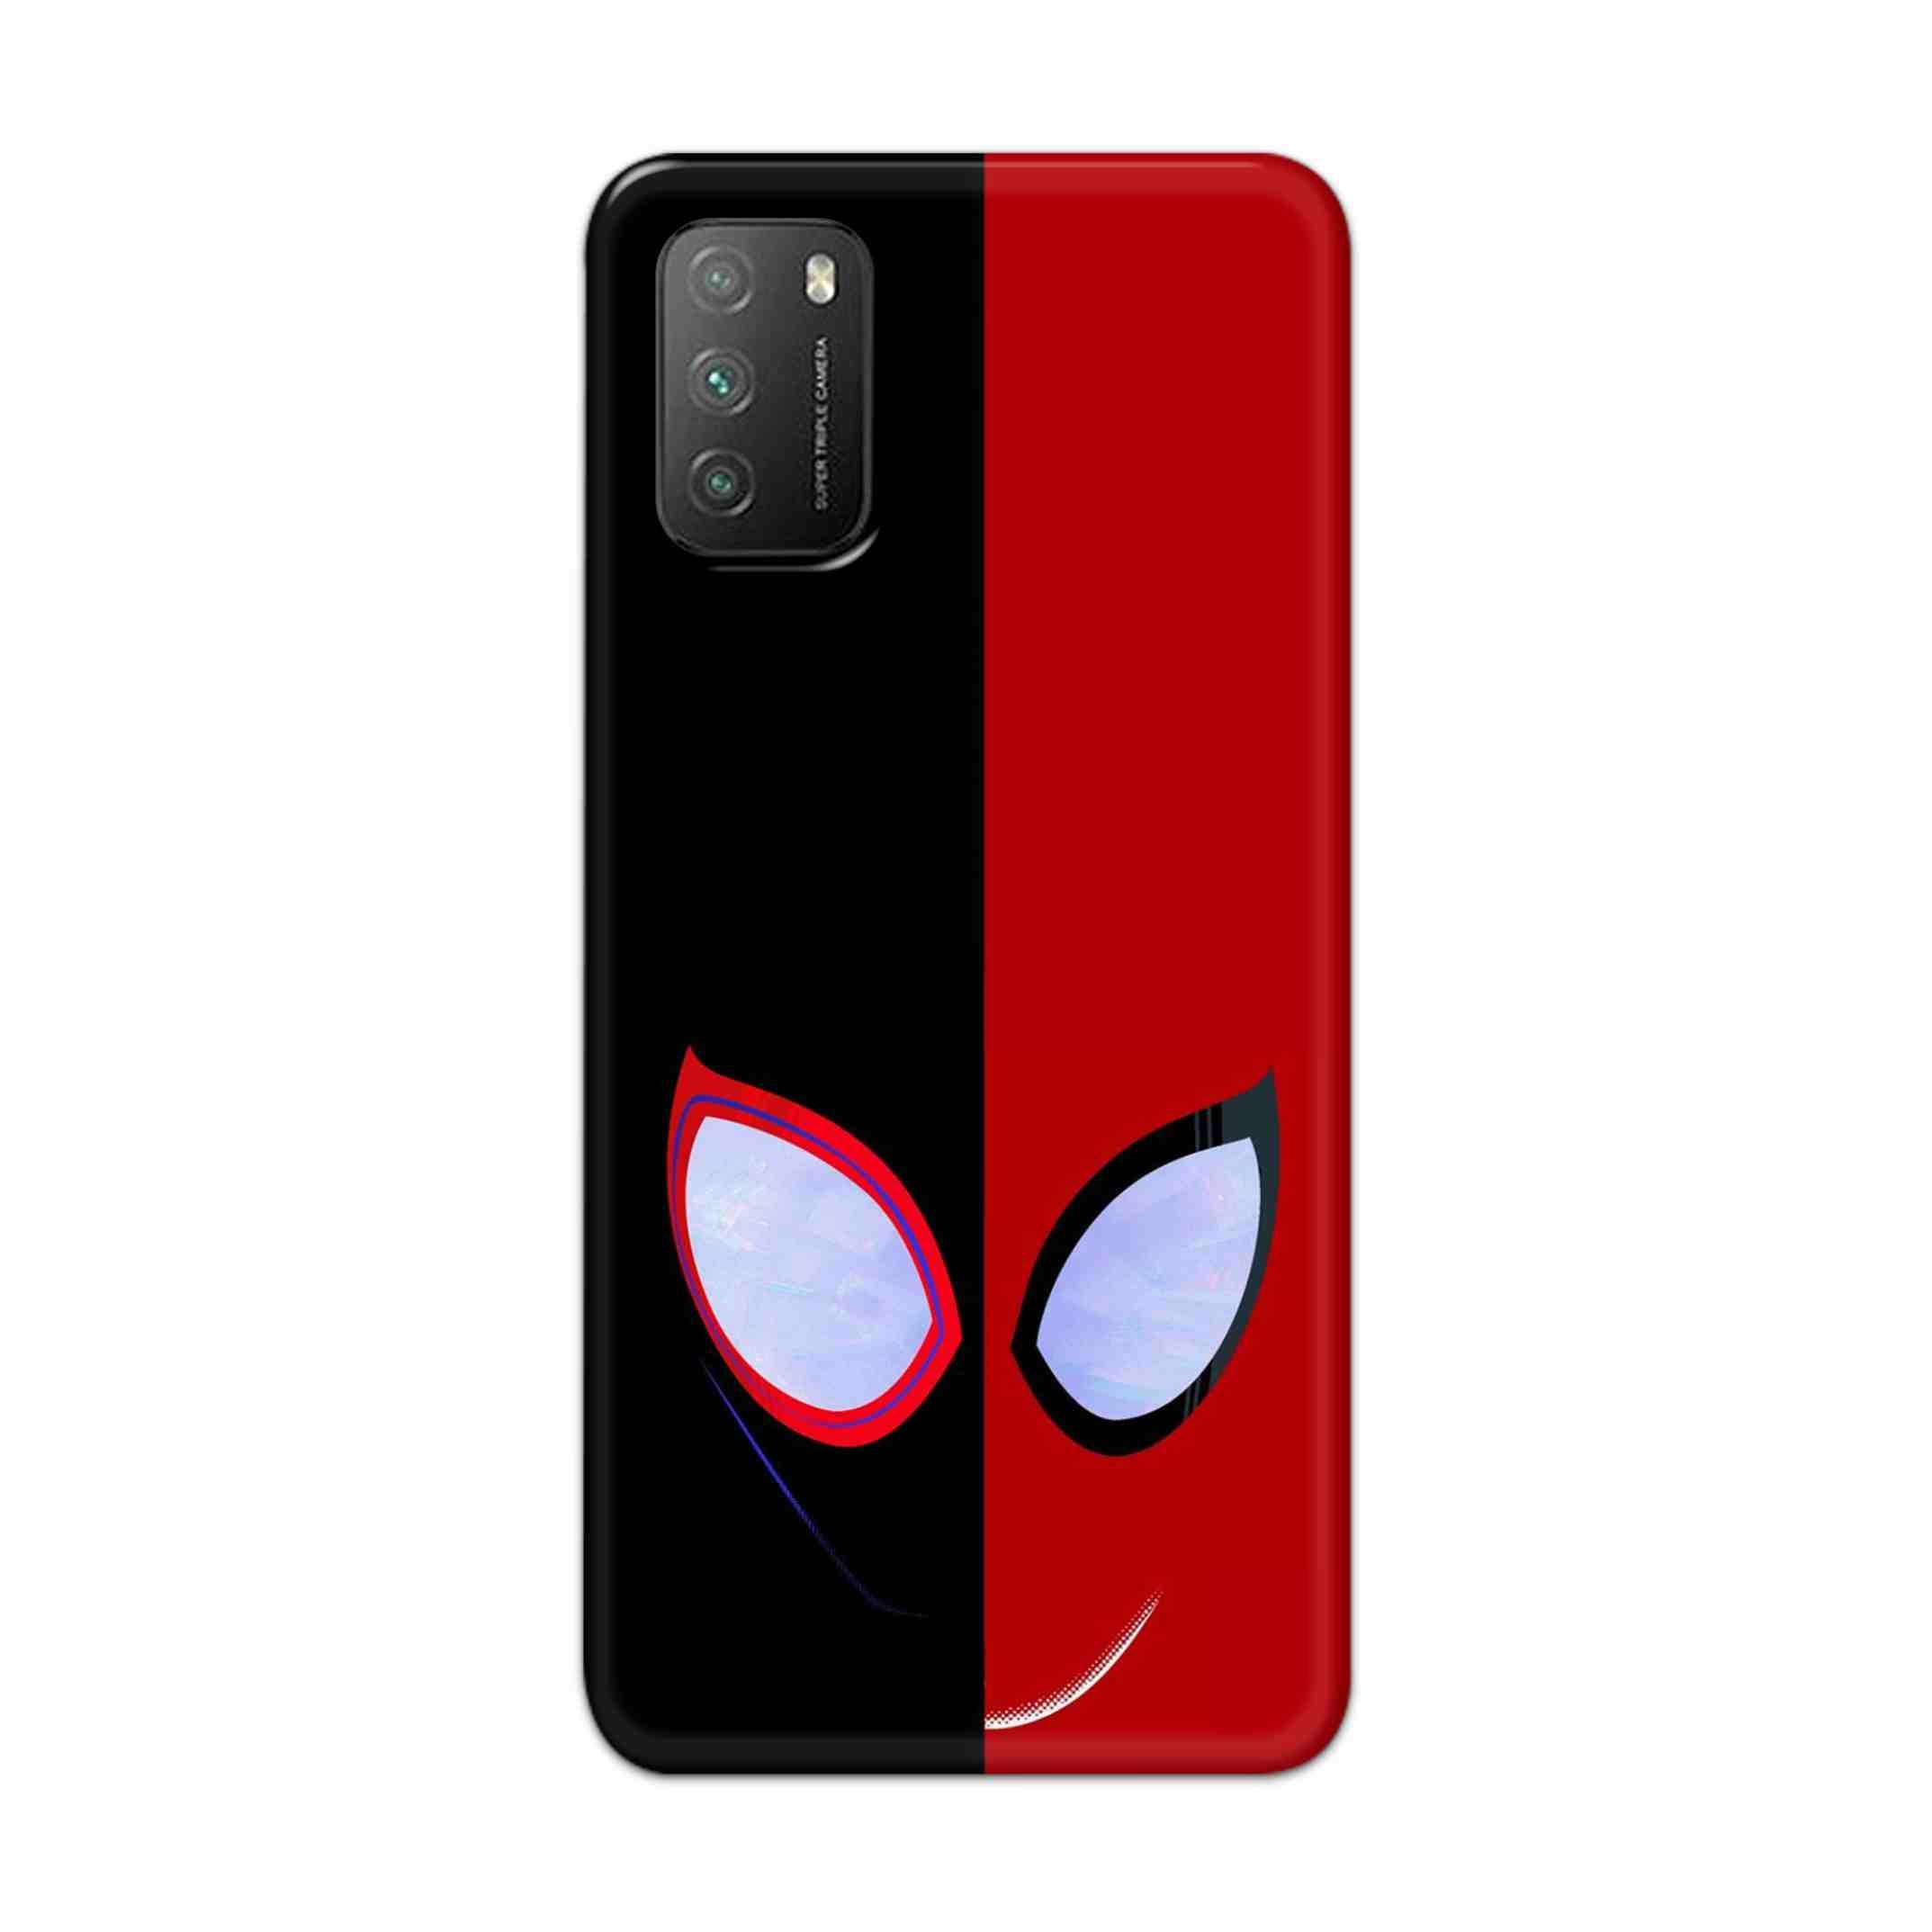 Buy Venom Vs Spiderman Hard Back Mobile Phone Case Cover For Poco M3 Online